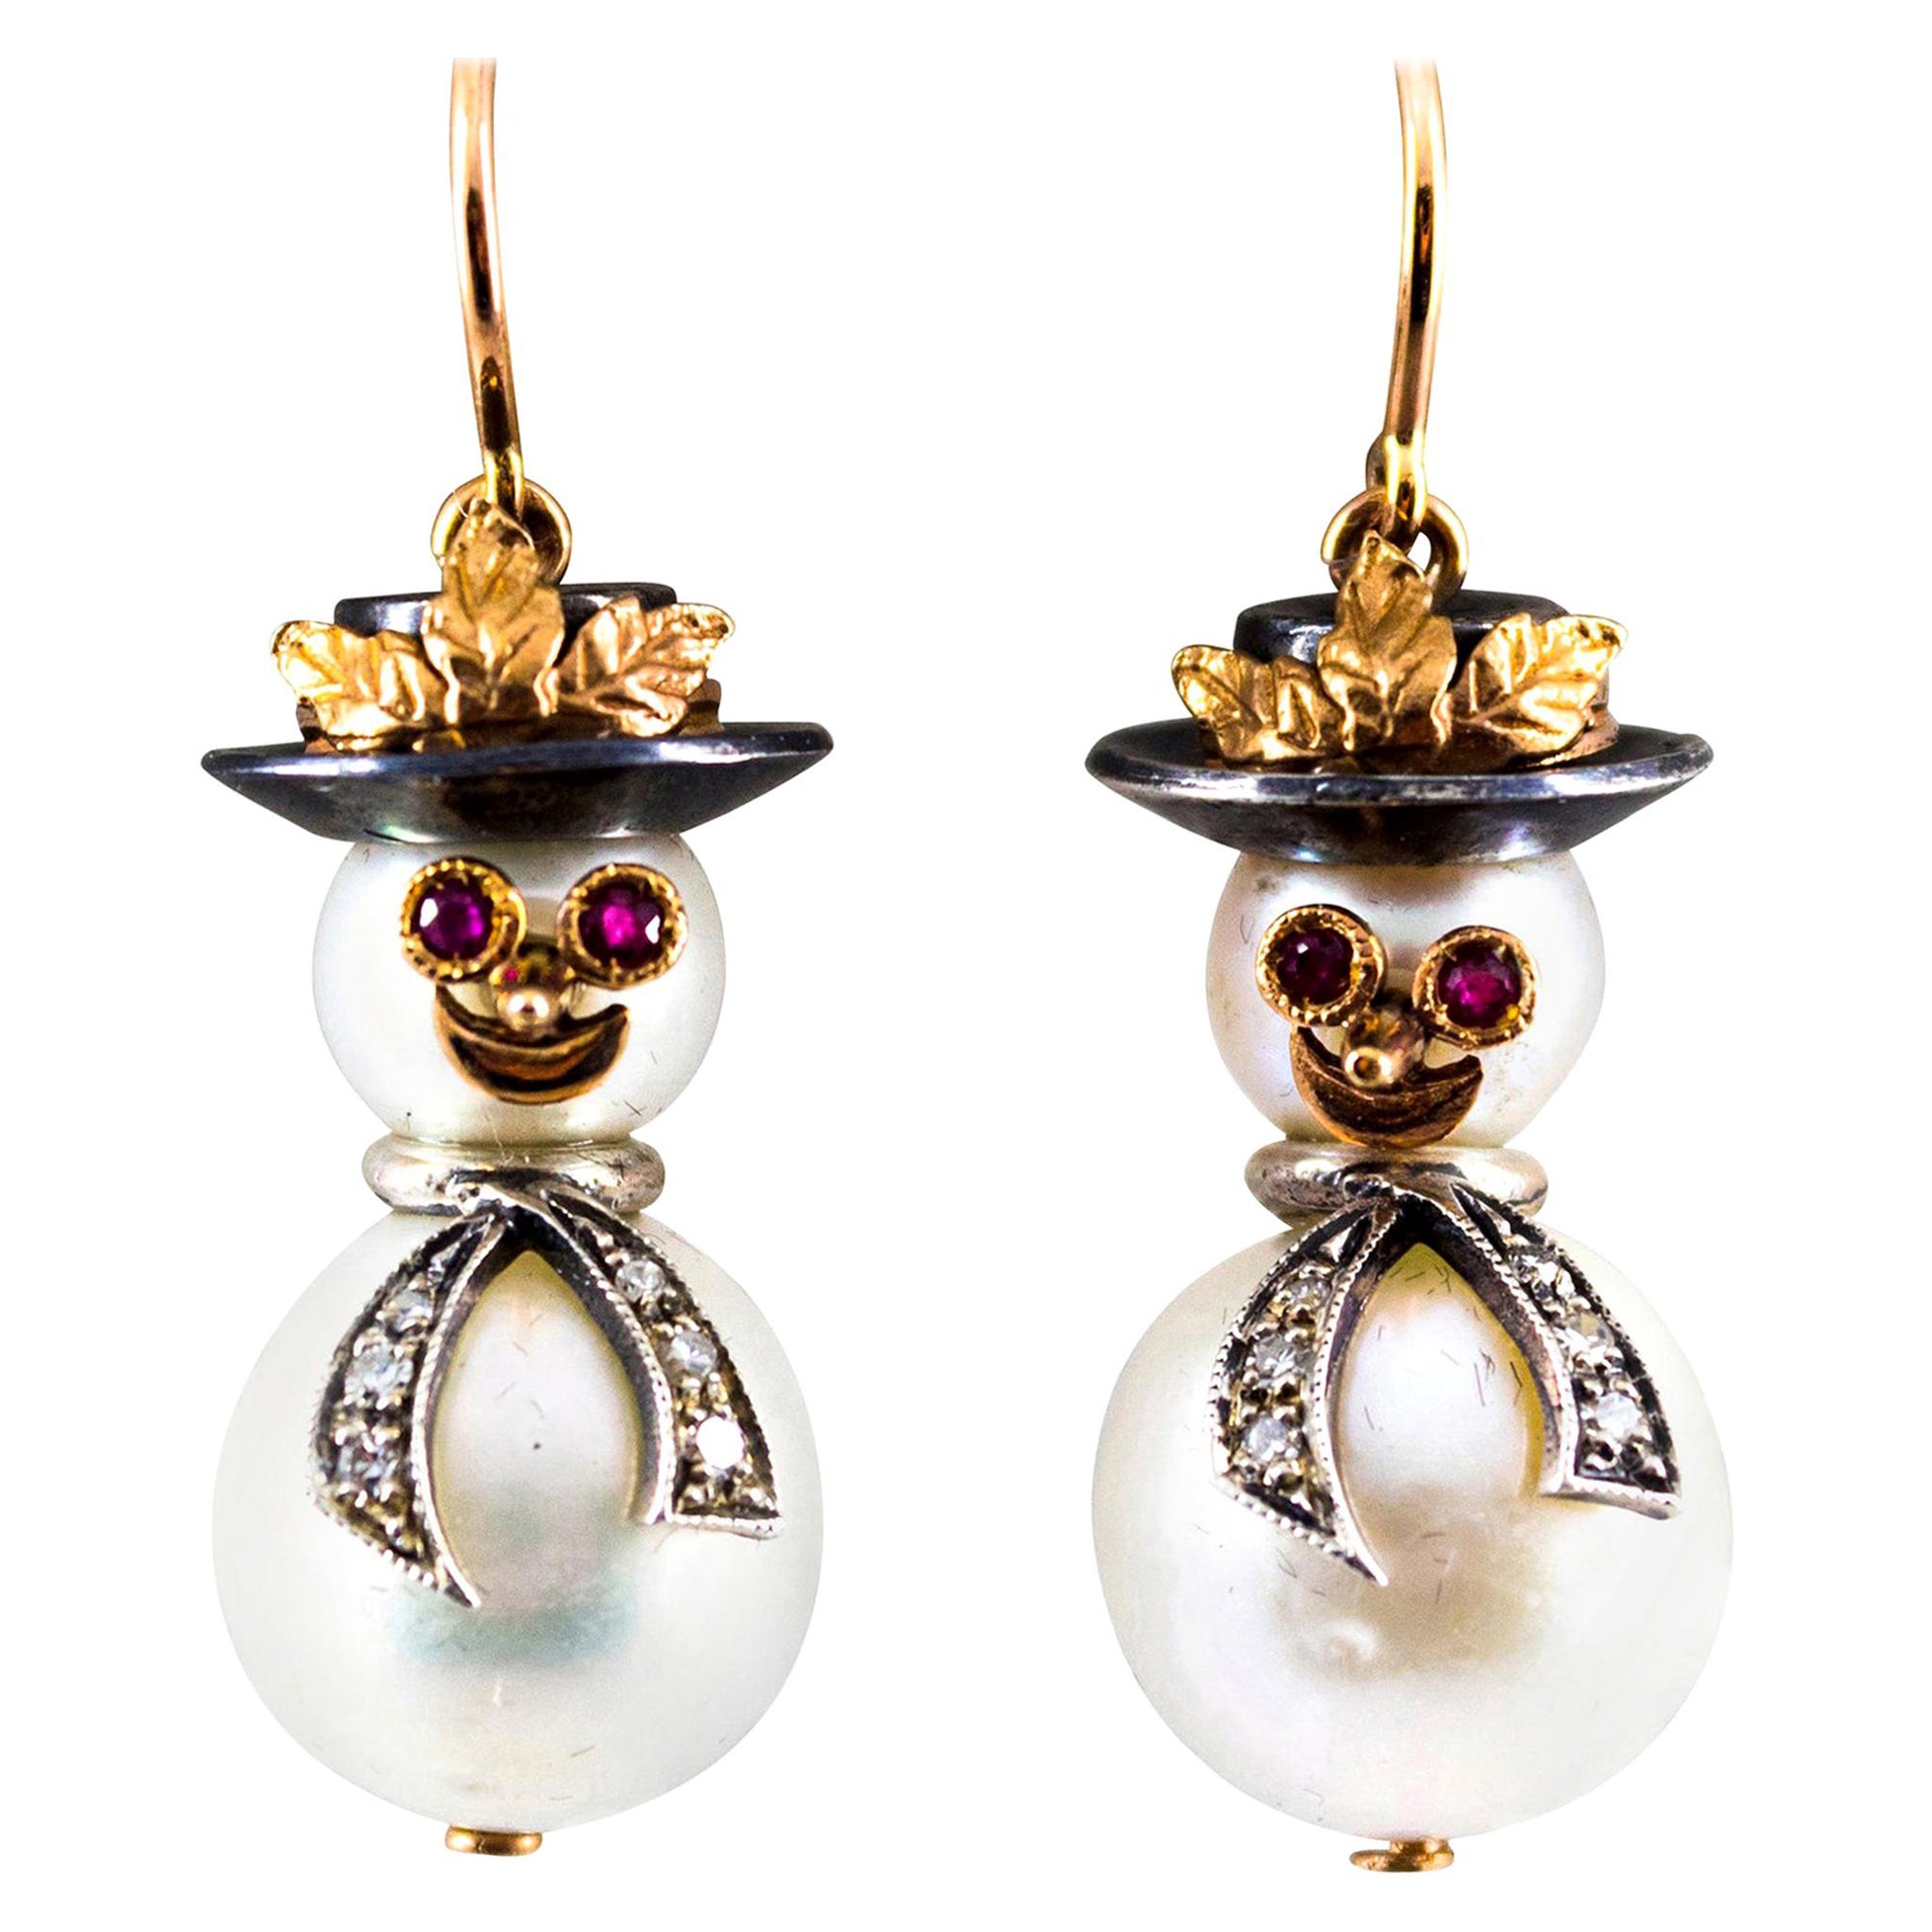 Clous d'oreilles « Snowman » en or jaune avec diamants blancs de 0,25 carat, rubis et perle orientale